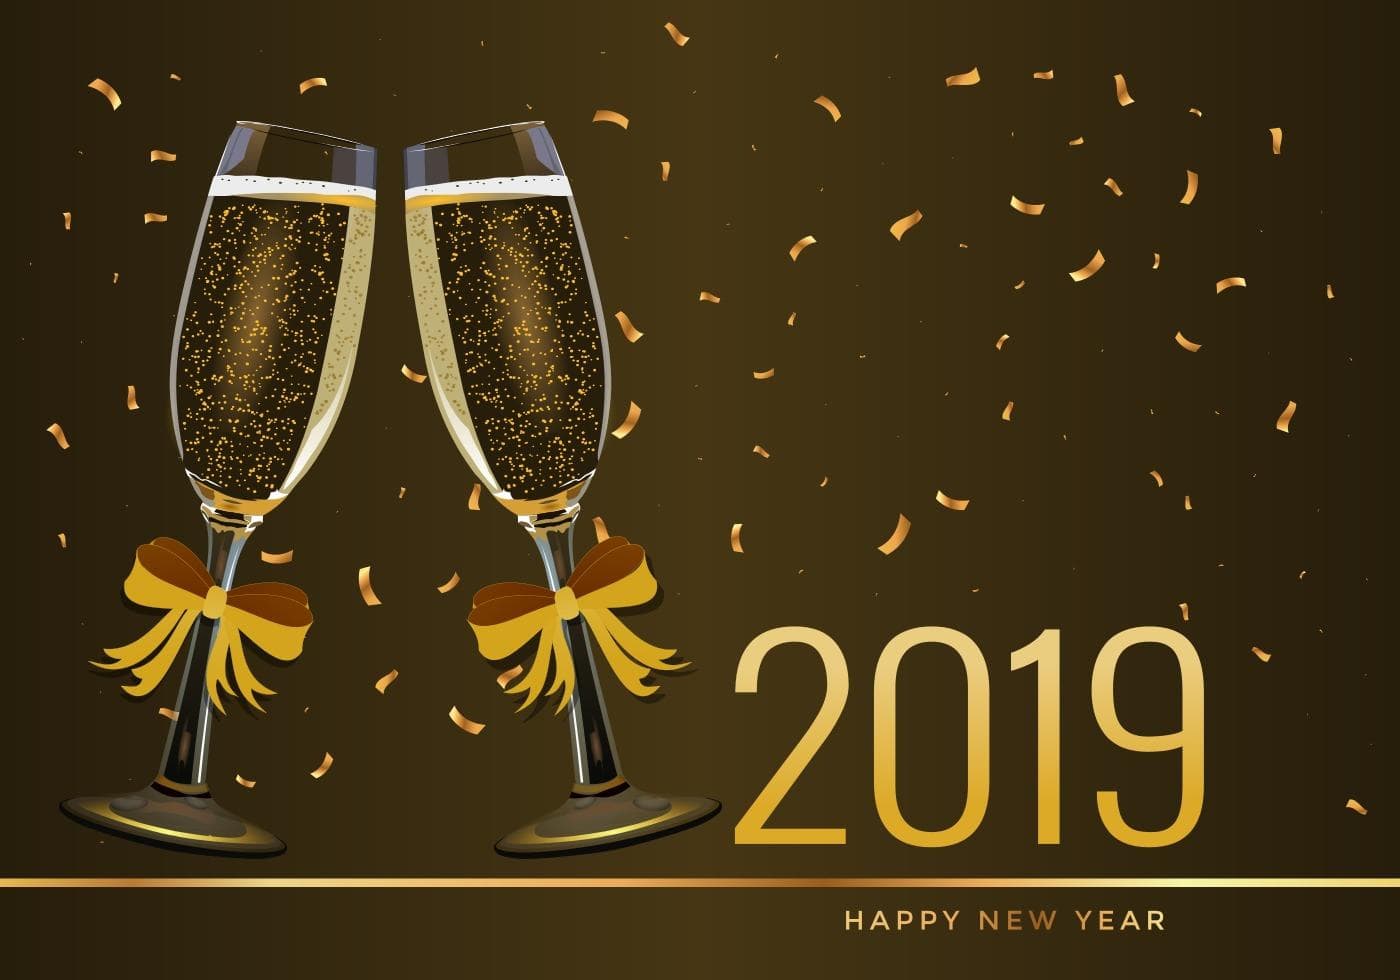 Lời chúc năm mới, Happy New Year 2019, Chúc mừng năm mới, Năm mới 2019, Năm 2019, lời chúc mừng năm mới, chúc tết 2019, lời chúc tết, Lời chúc Tết 2019, chúc tết, 2019